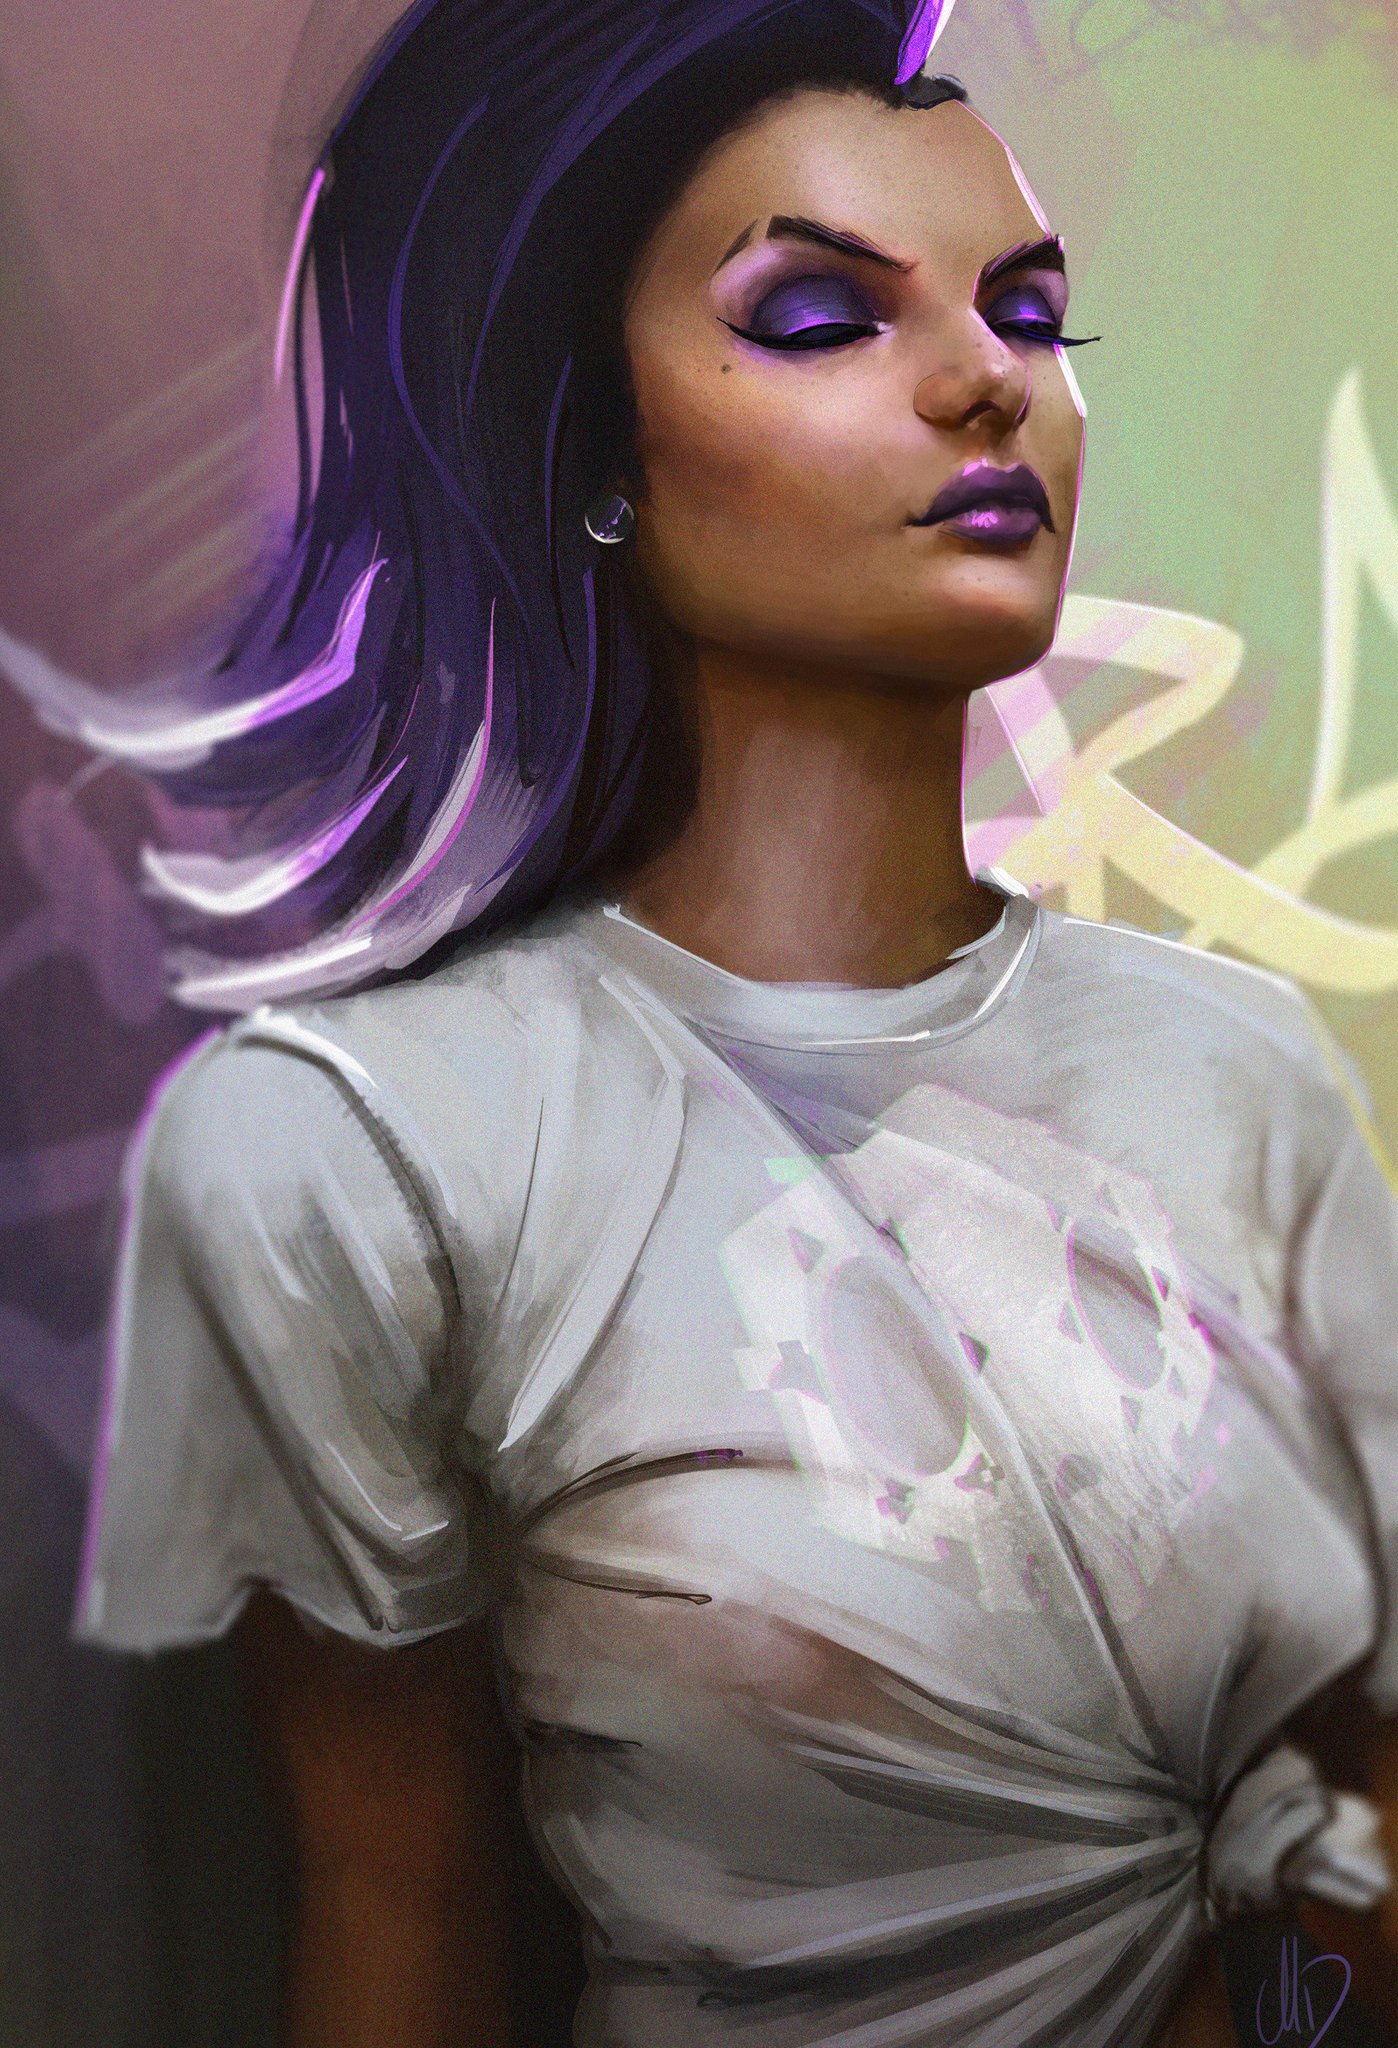 Women Digital Art Overwatch Sombra Sombra Overwatch Wallpapers Hd Desktop And Mobile Backgrounds